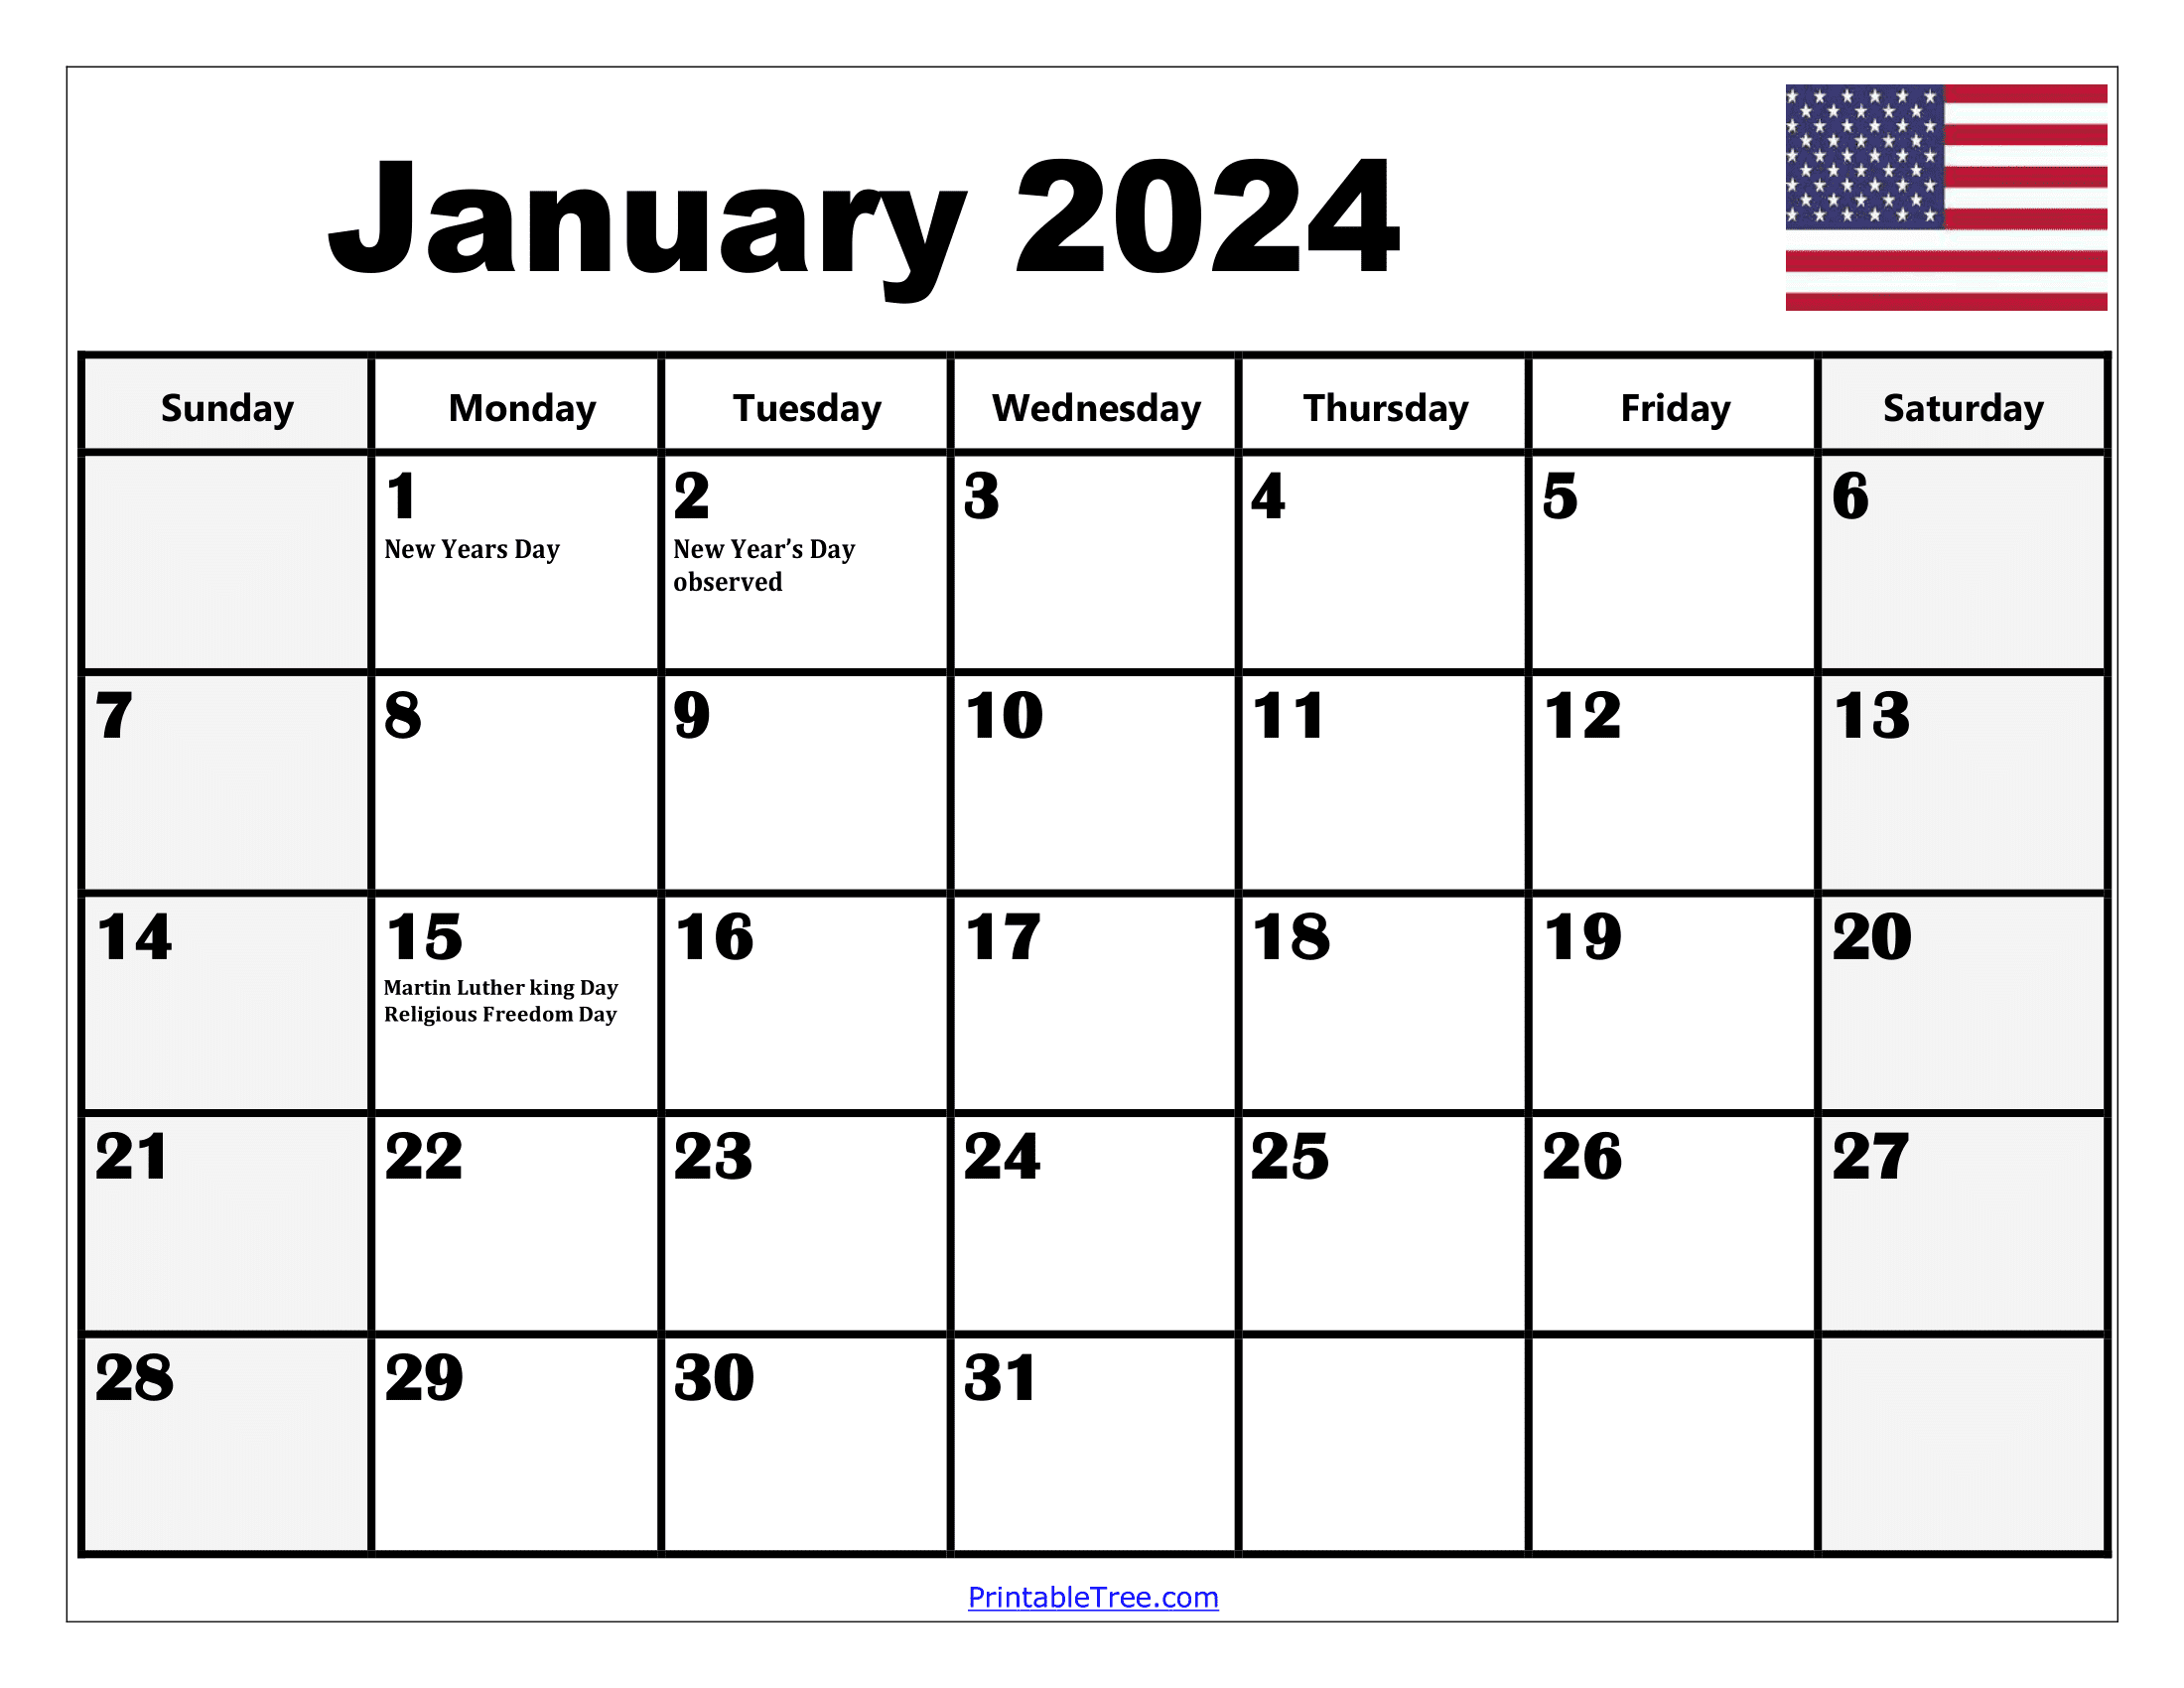 2024 Holiday Calendar Days Free Download Nov 2024 Calendar - Free Printable 2024 Calendar With Us Holidays For Crafts